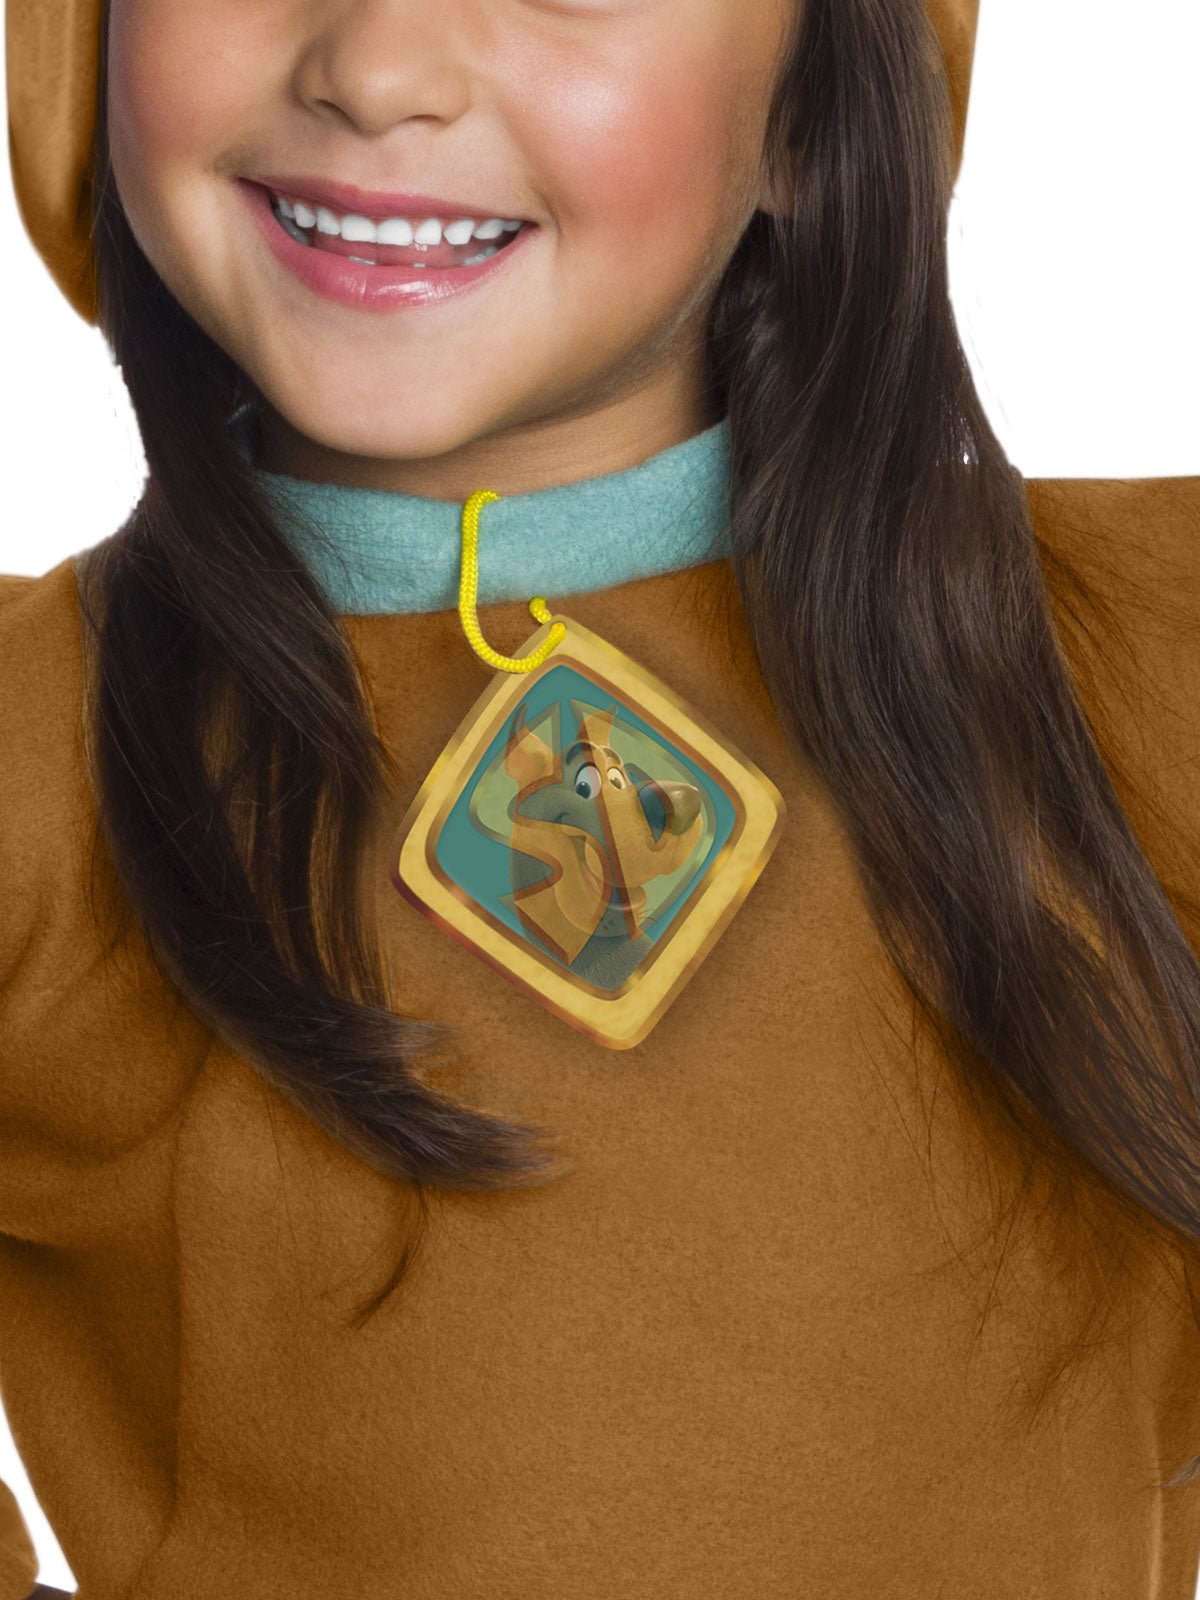 Scooby Doo Deluxe Costume With Lenticular Badge Kids